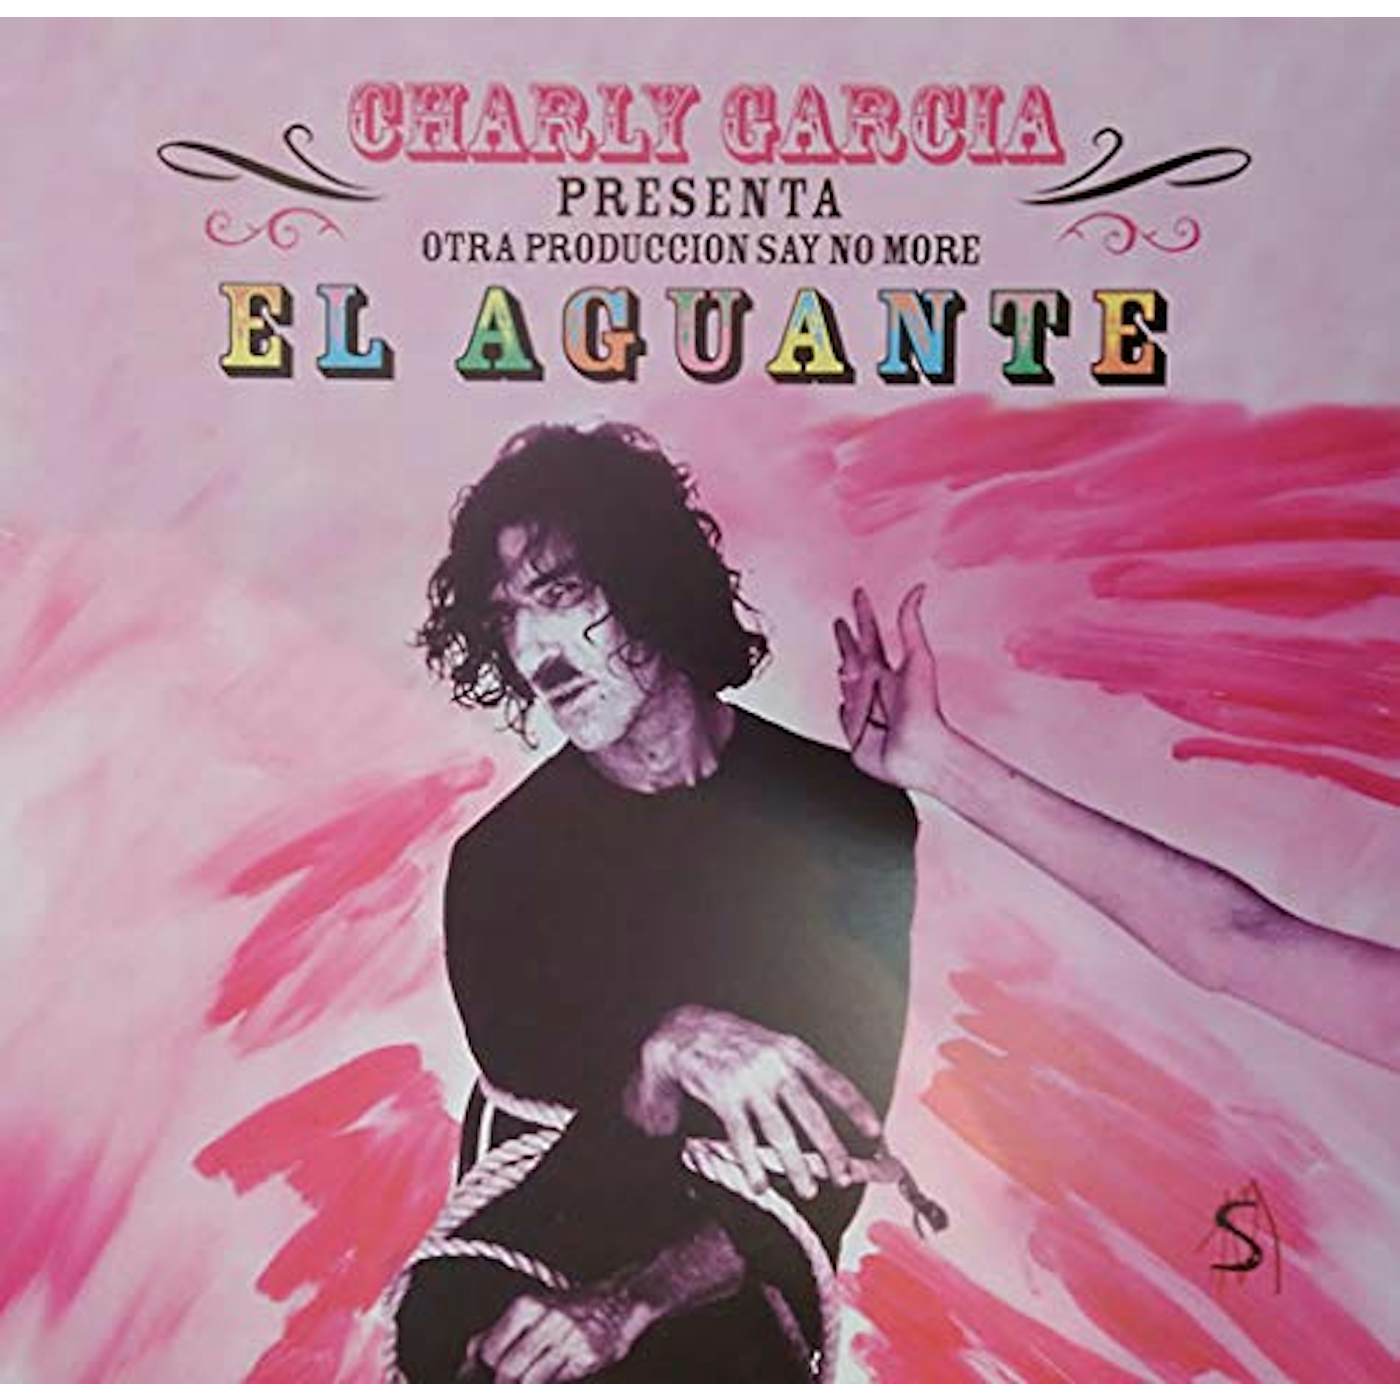 Charly Garcia Pena El Aguante Vinyl Record